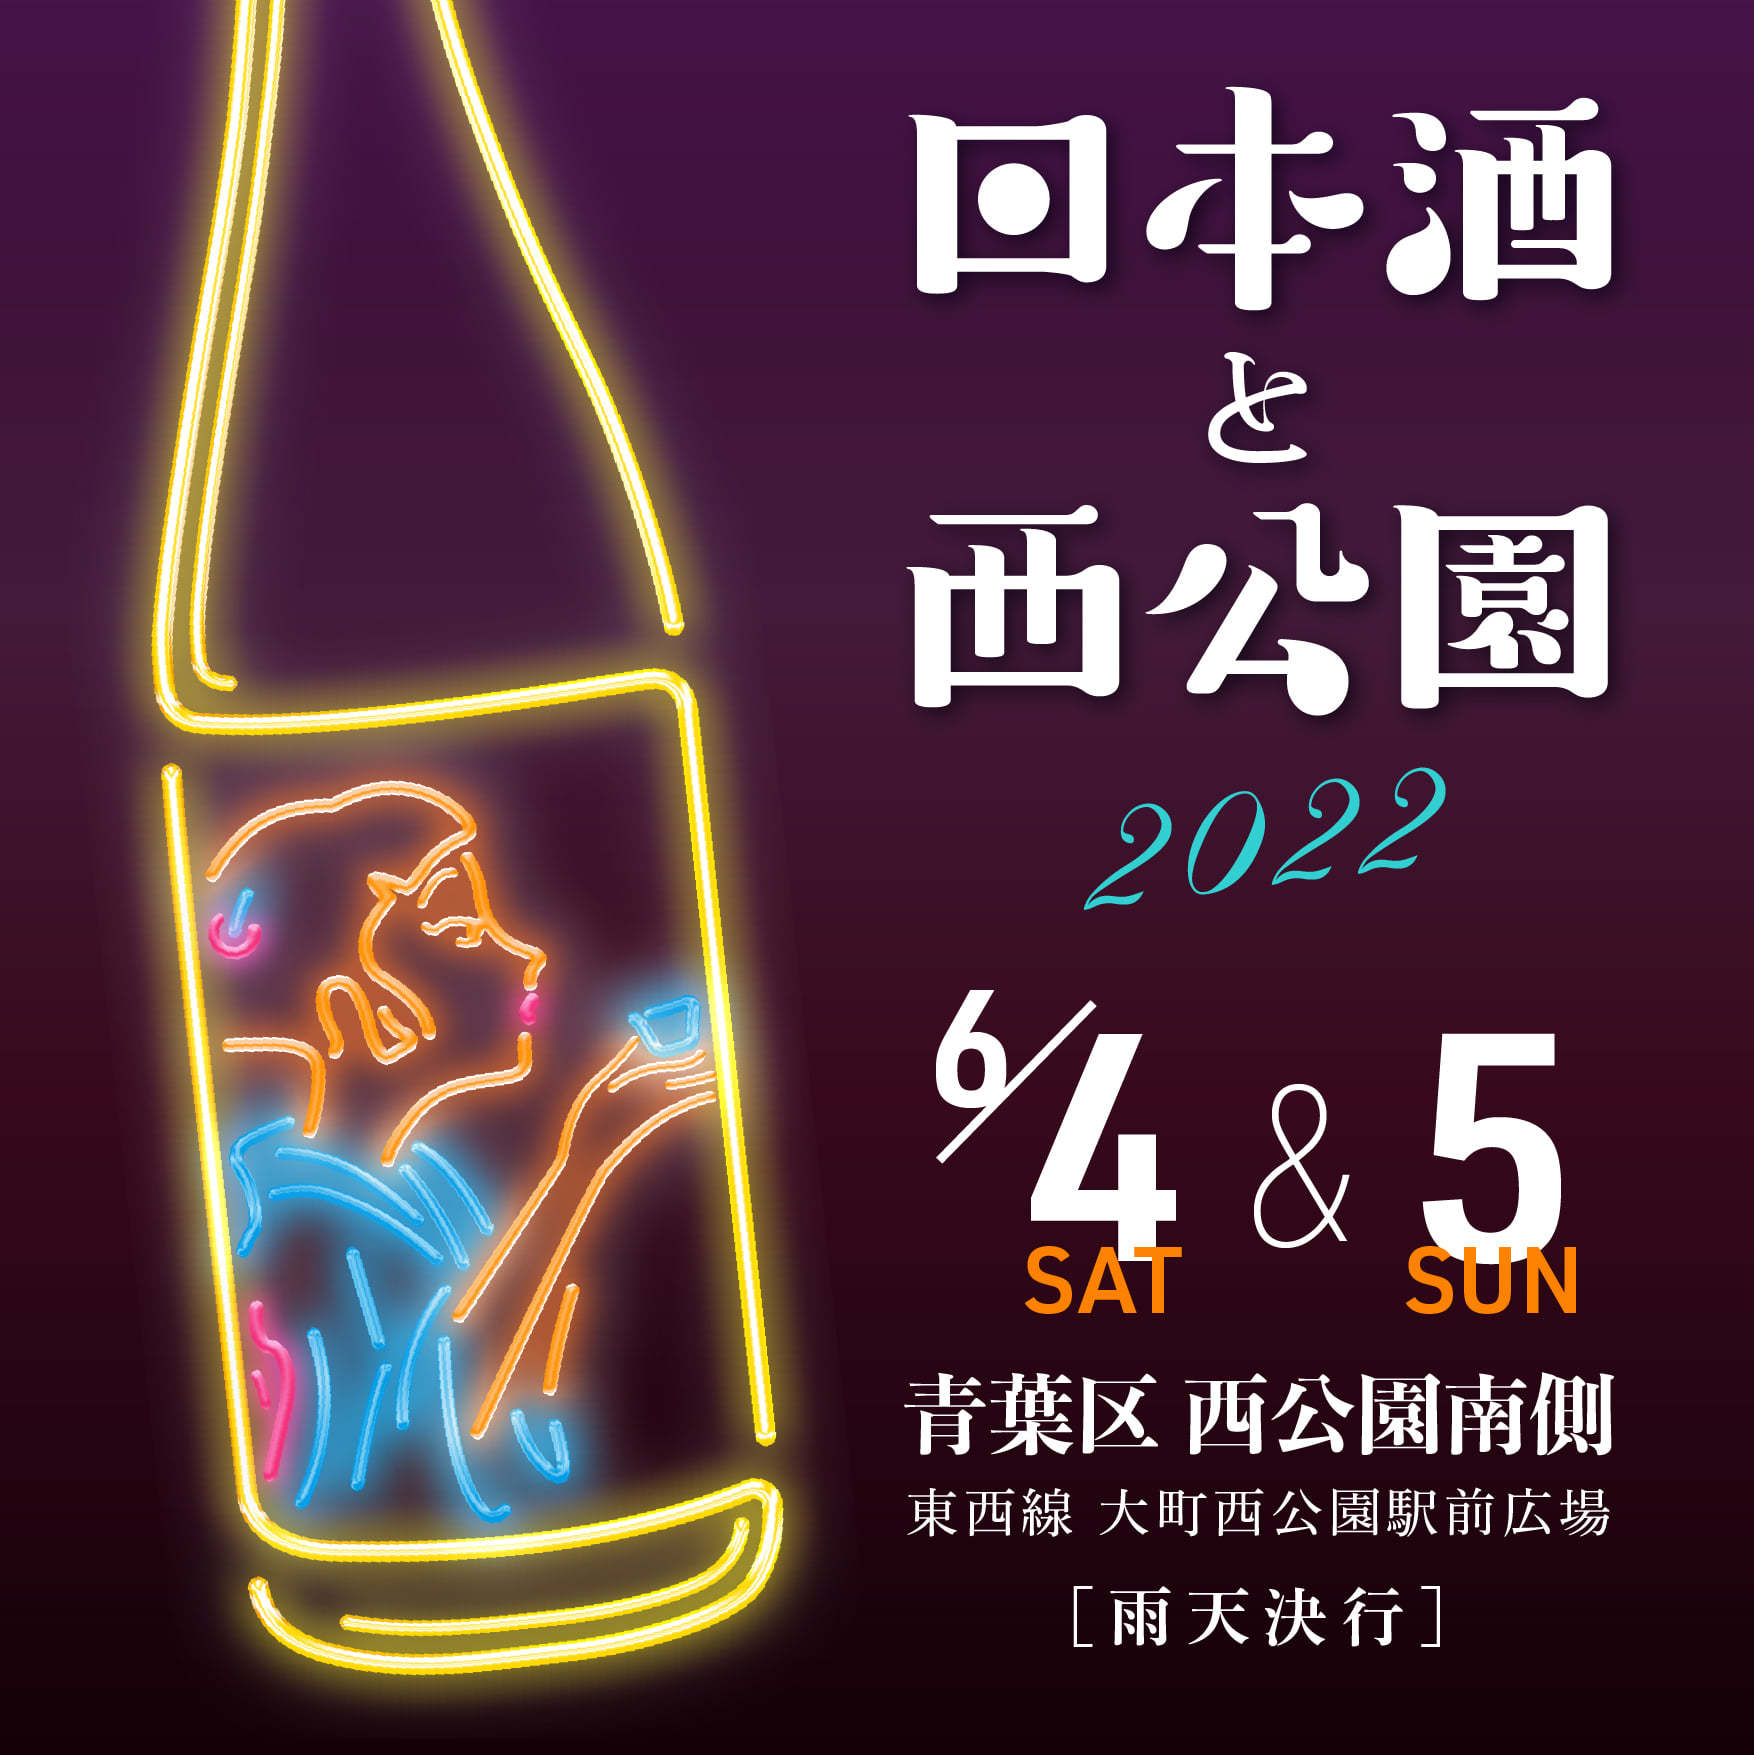 阪神甲子園球場 外周フードイベント第2弾
～ 2019年の熱気、再び！「甲子園 肉祭」 ～